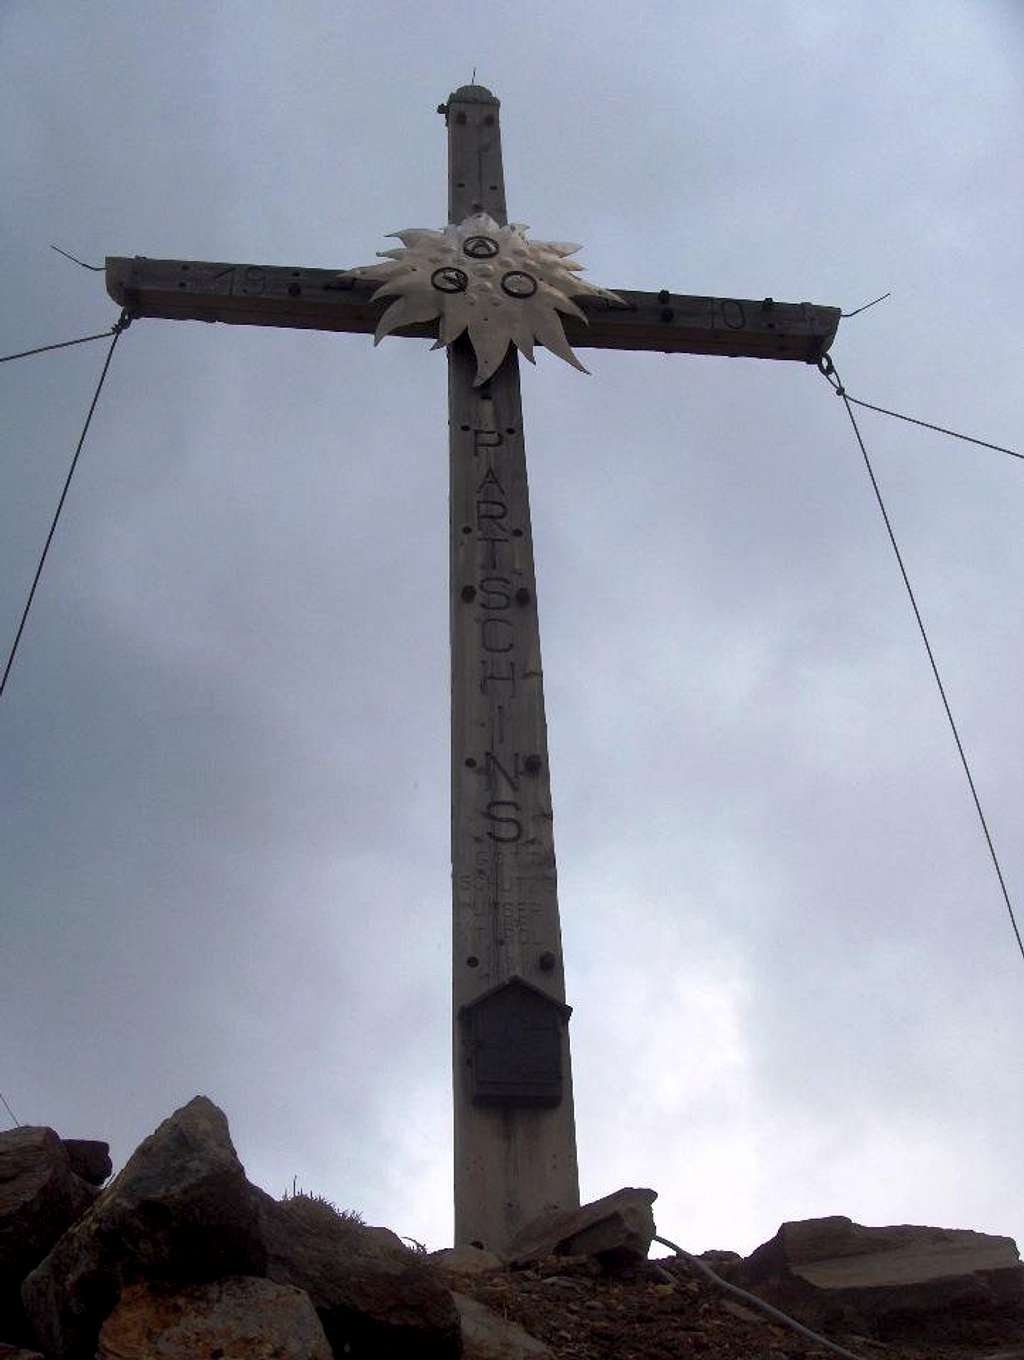 Blasiuszeiger summit cross (2837m)